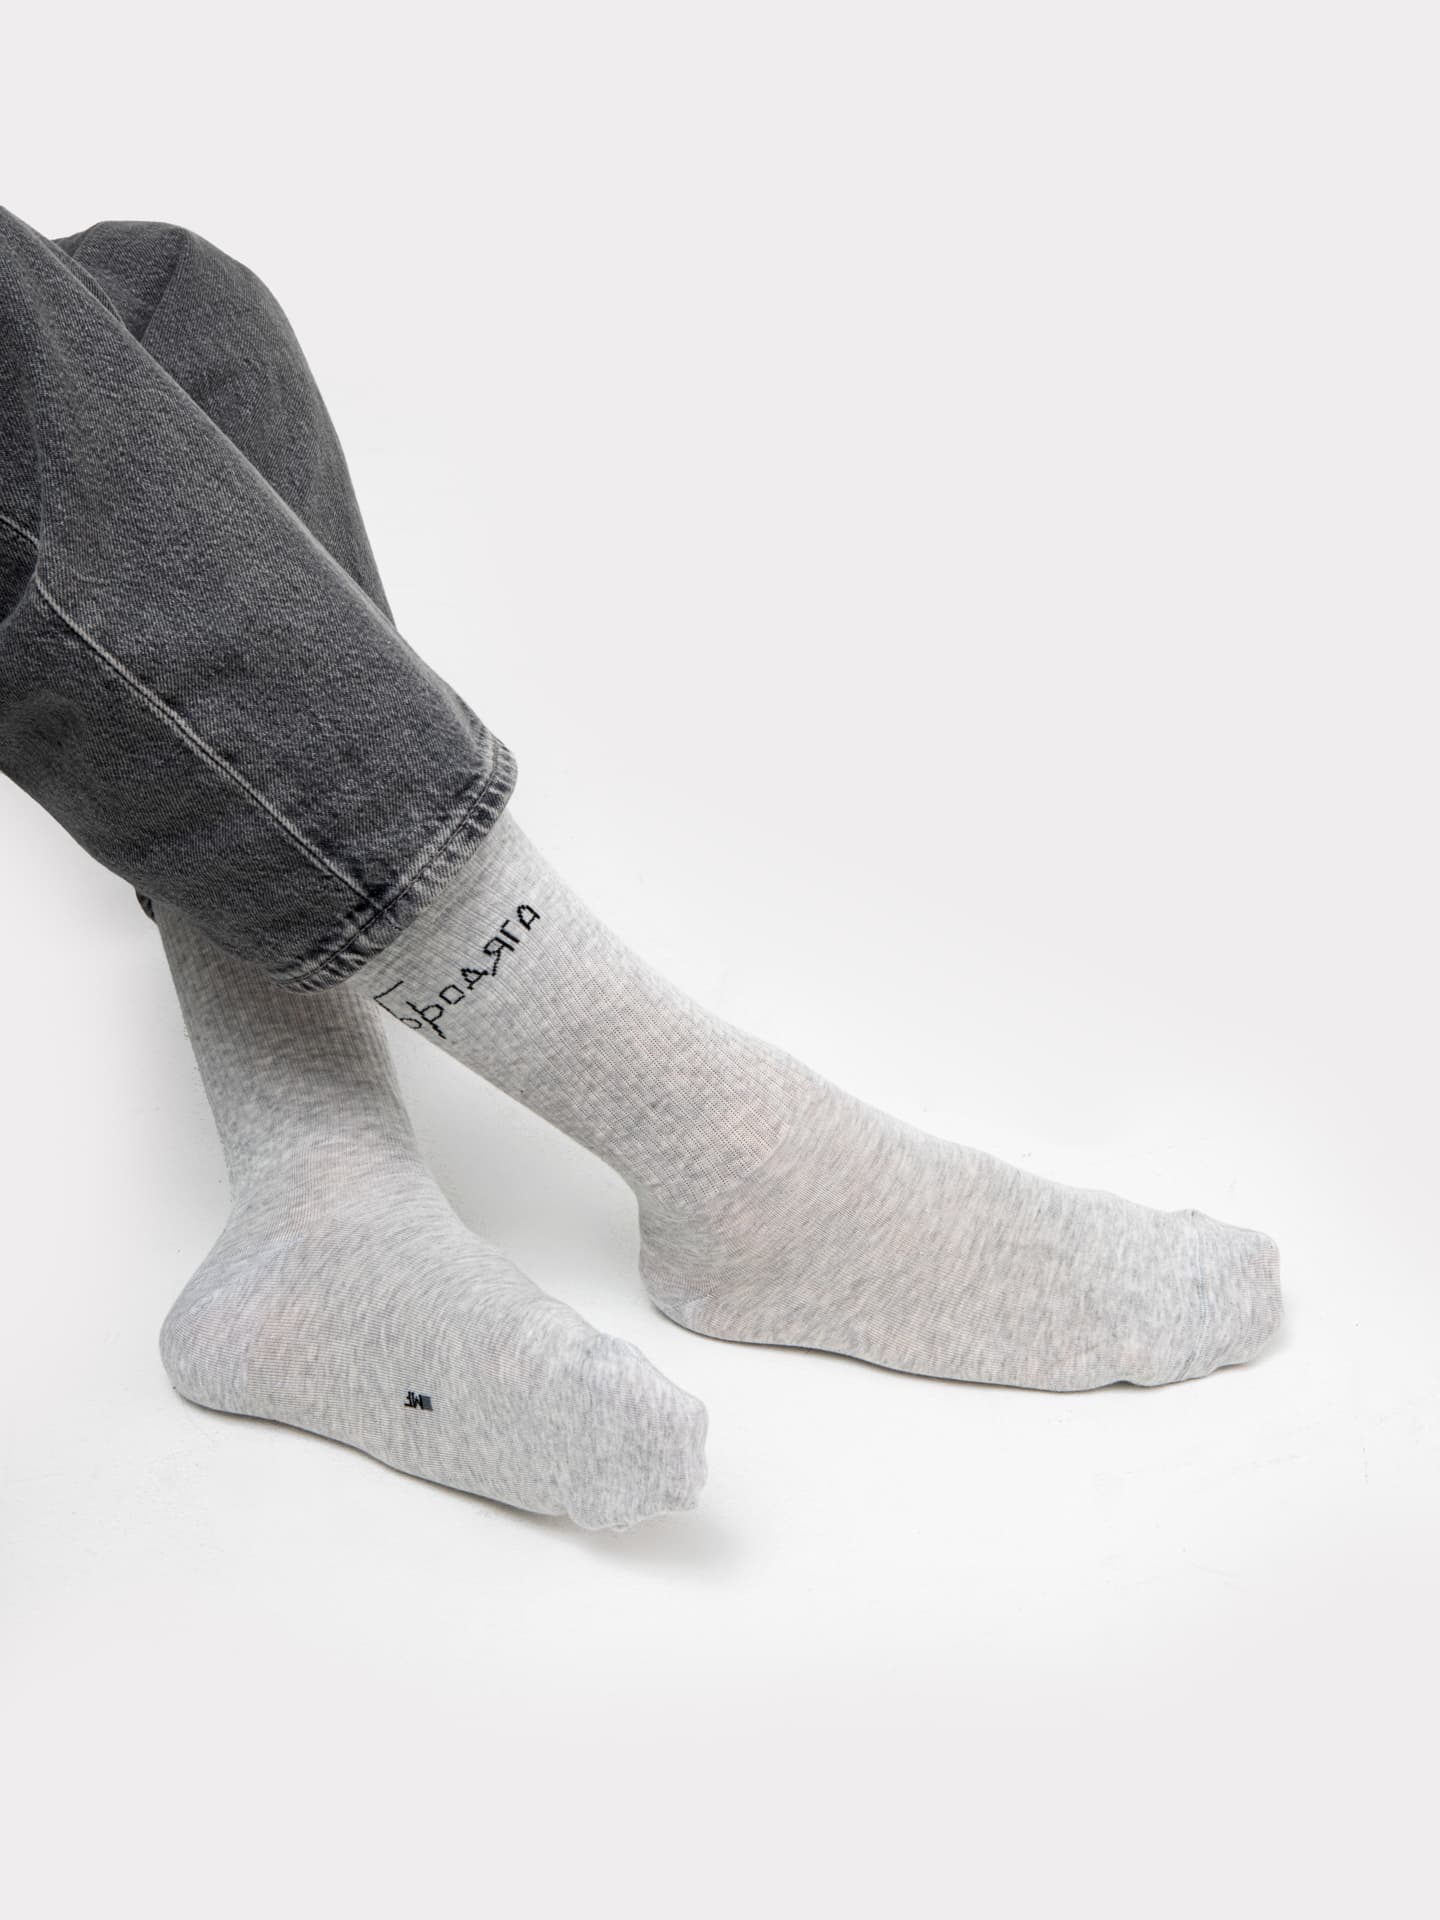 Высокие мужские носки светло-серого цвета с забавной надписью